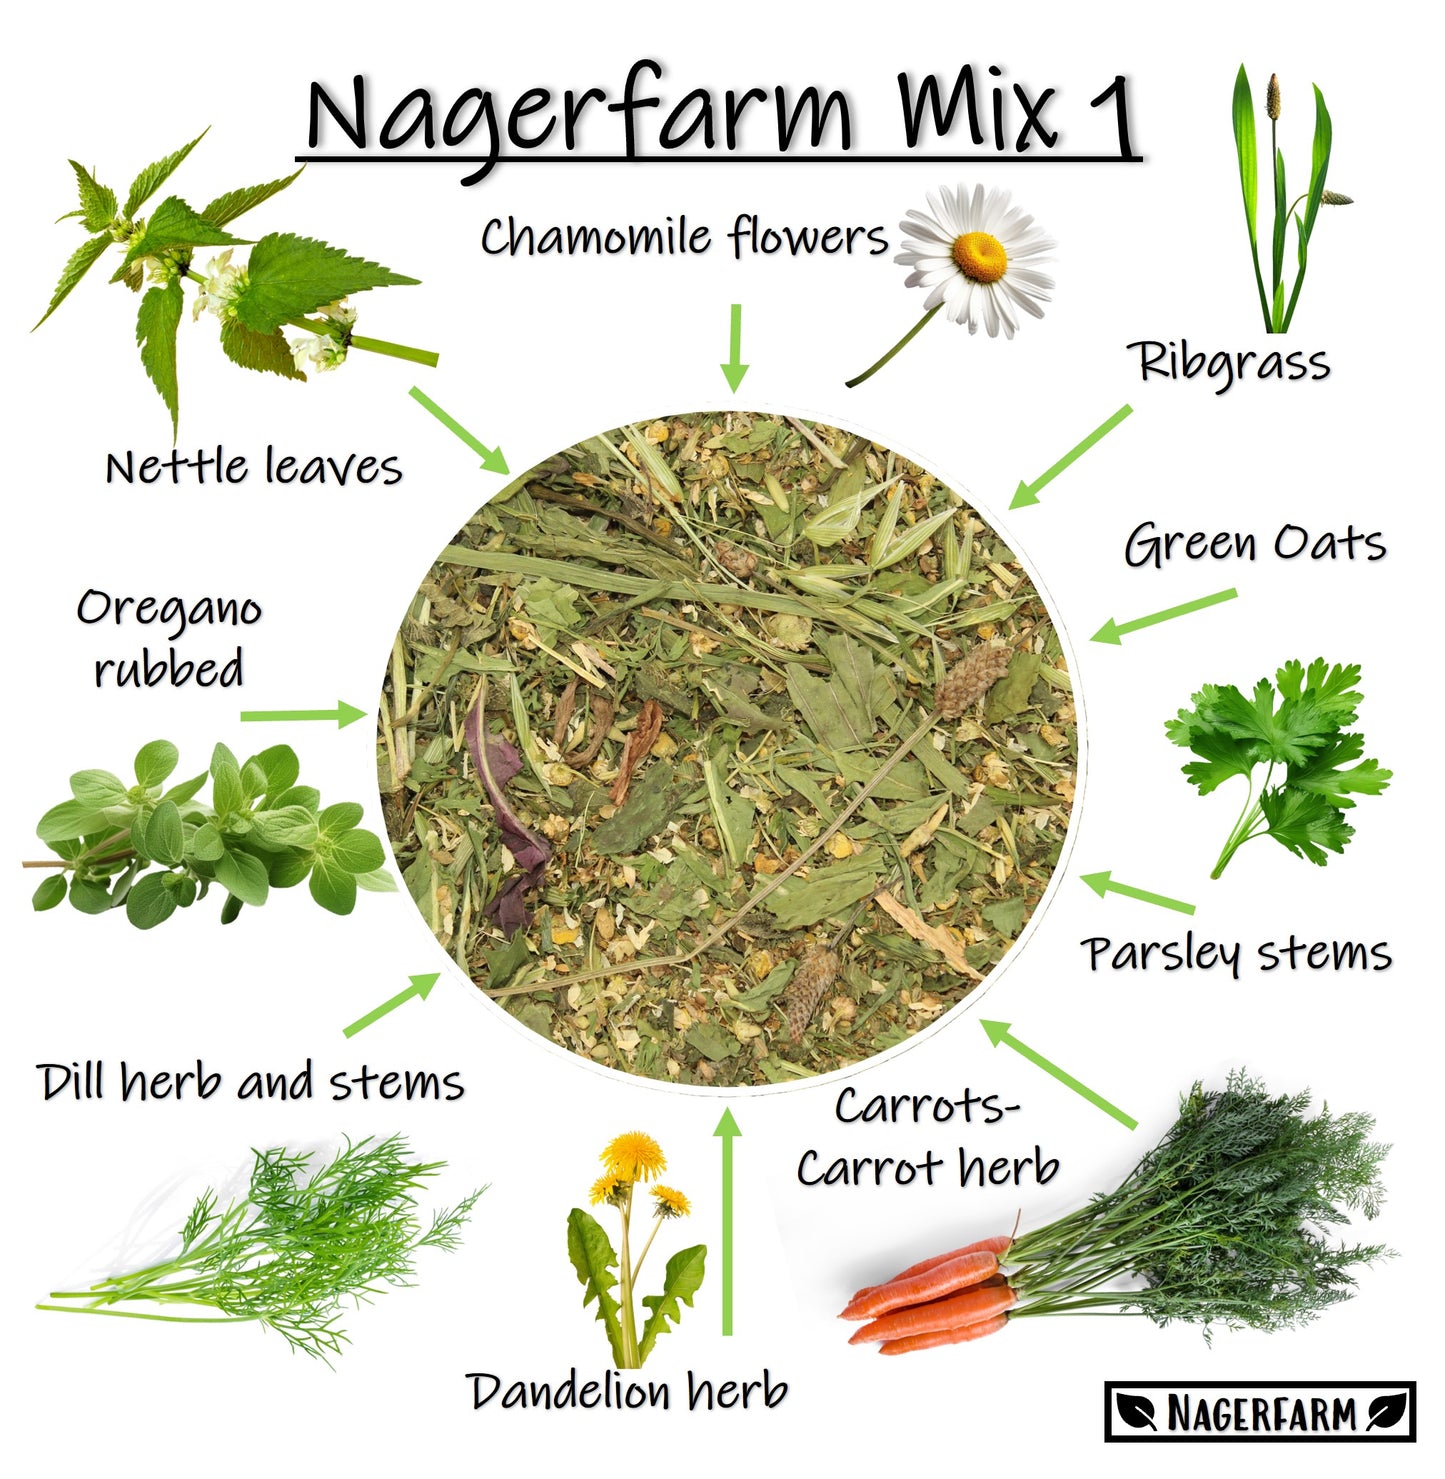 Nagerfarm Mix 1